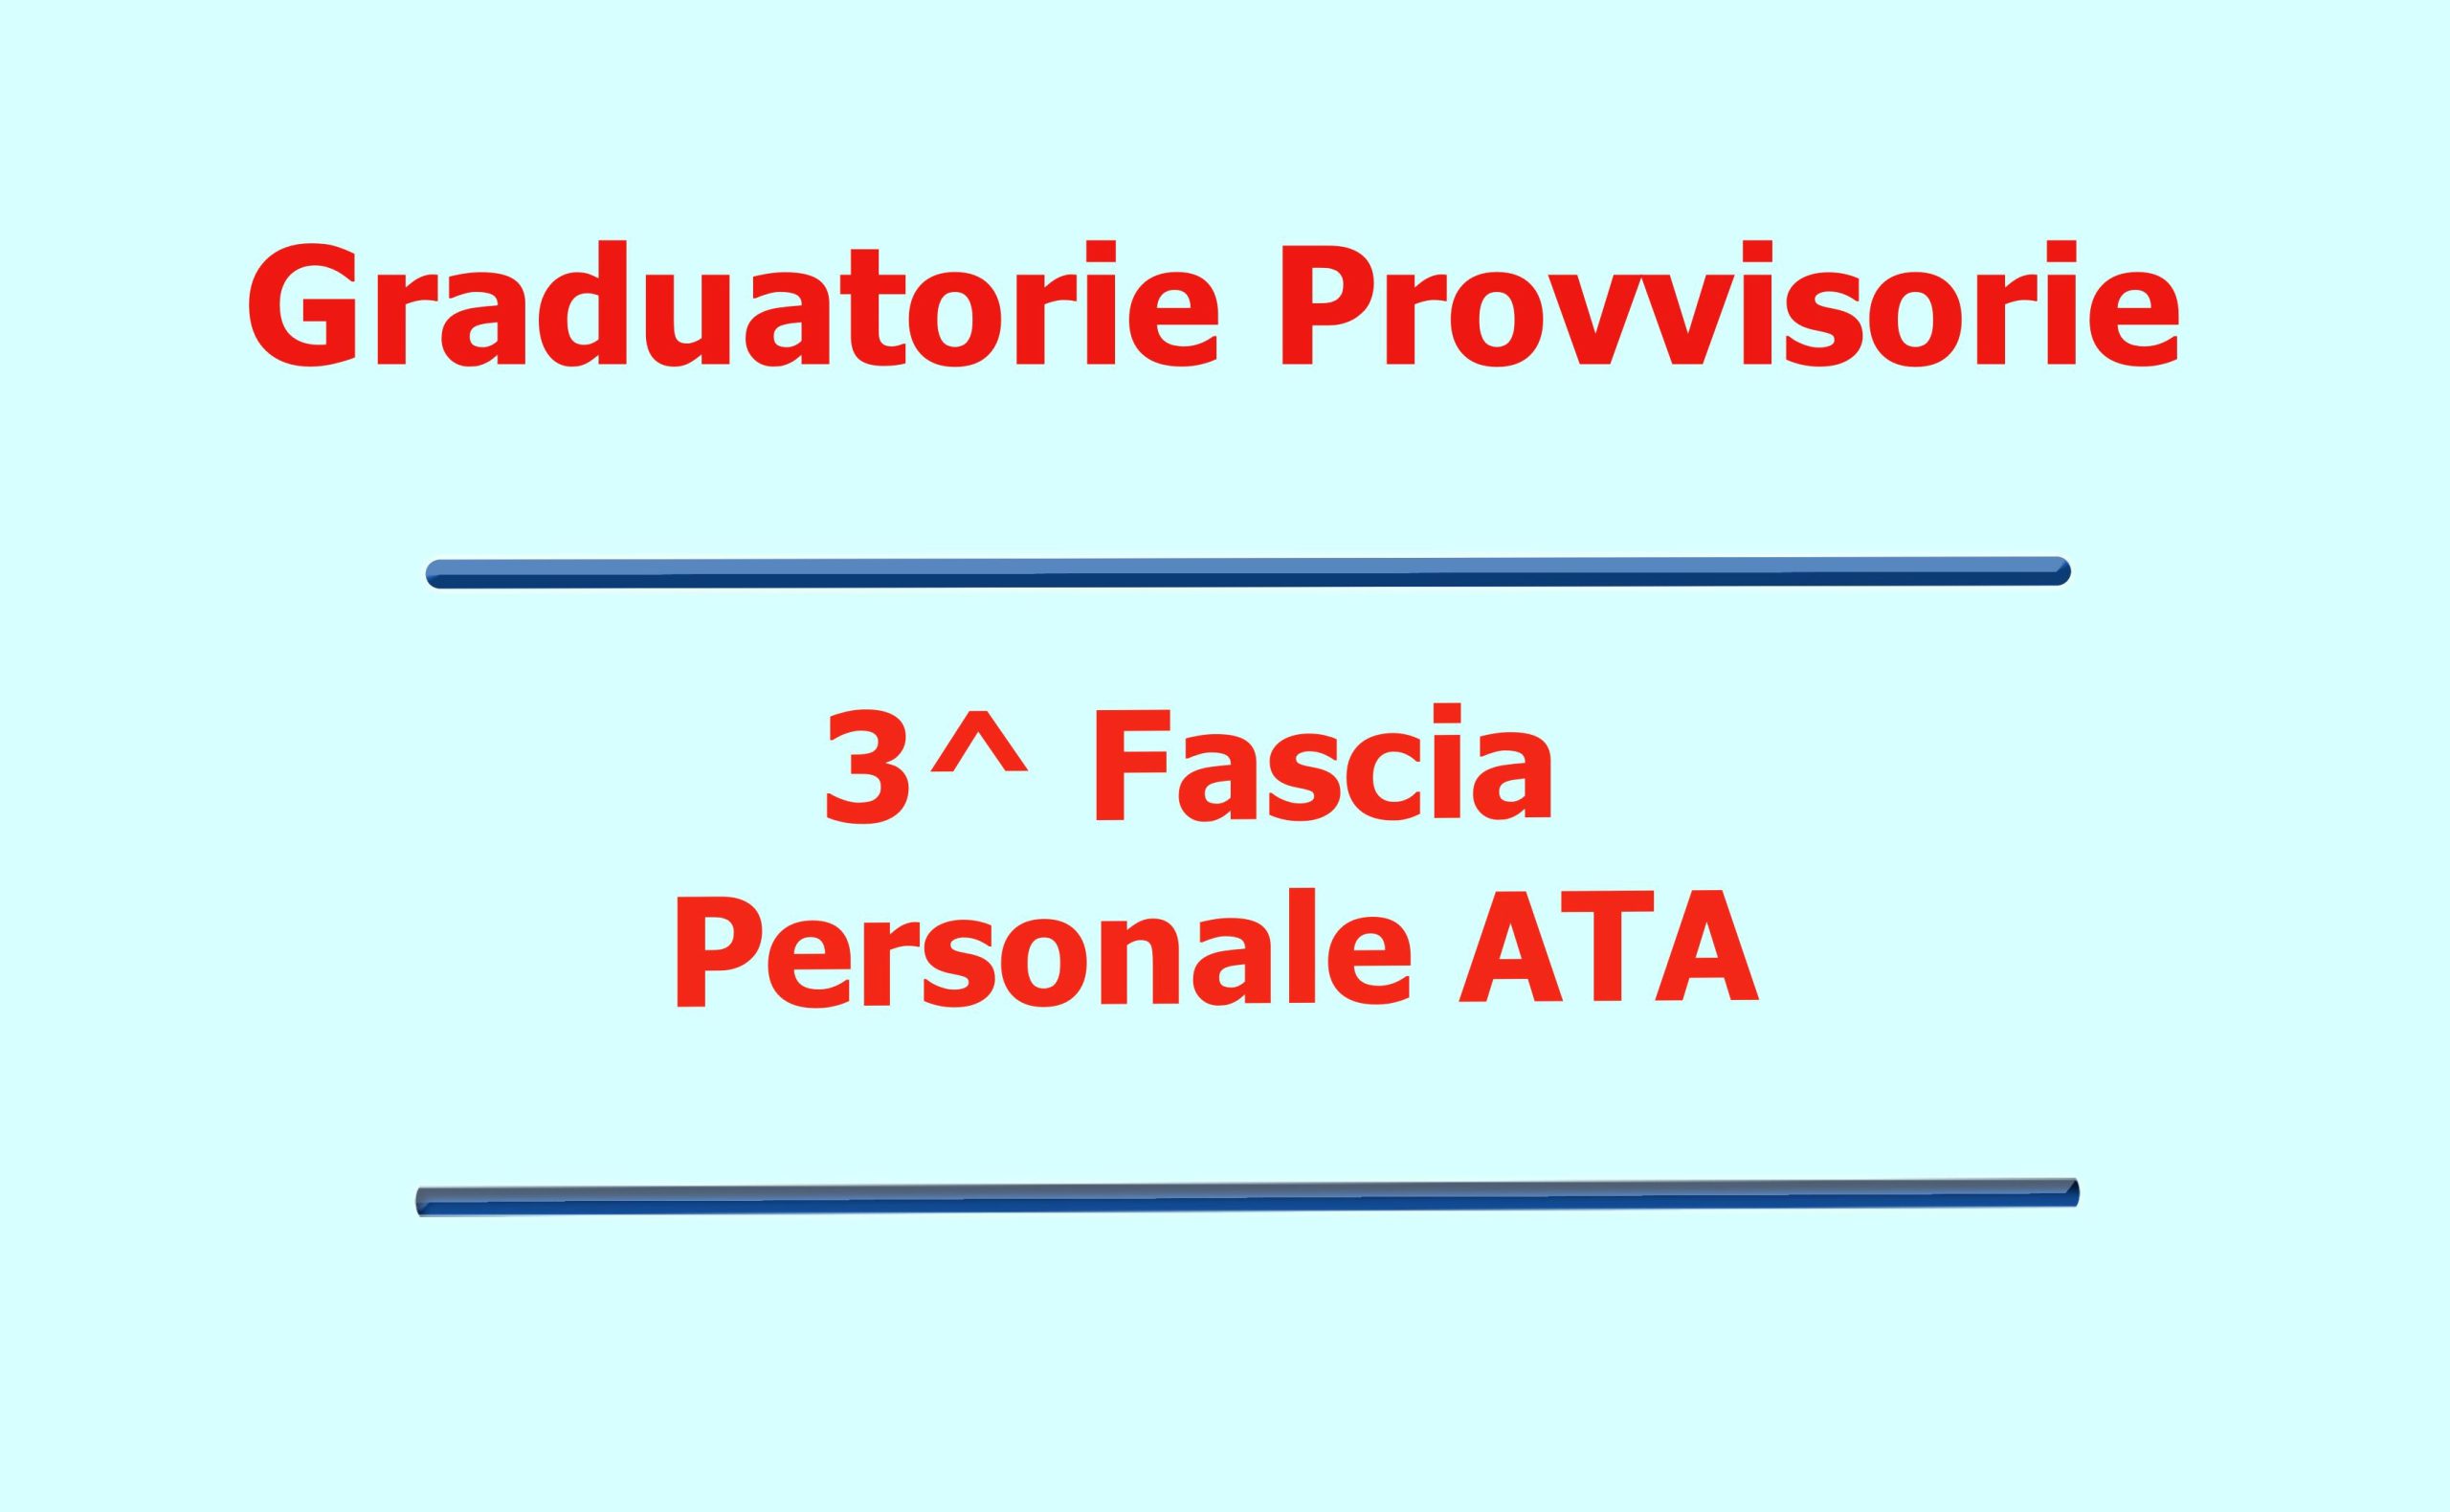 Graduatorie provvisorie personale ATA